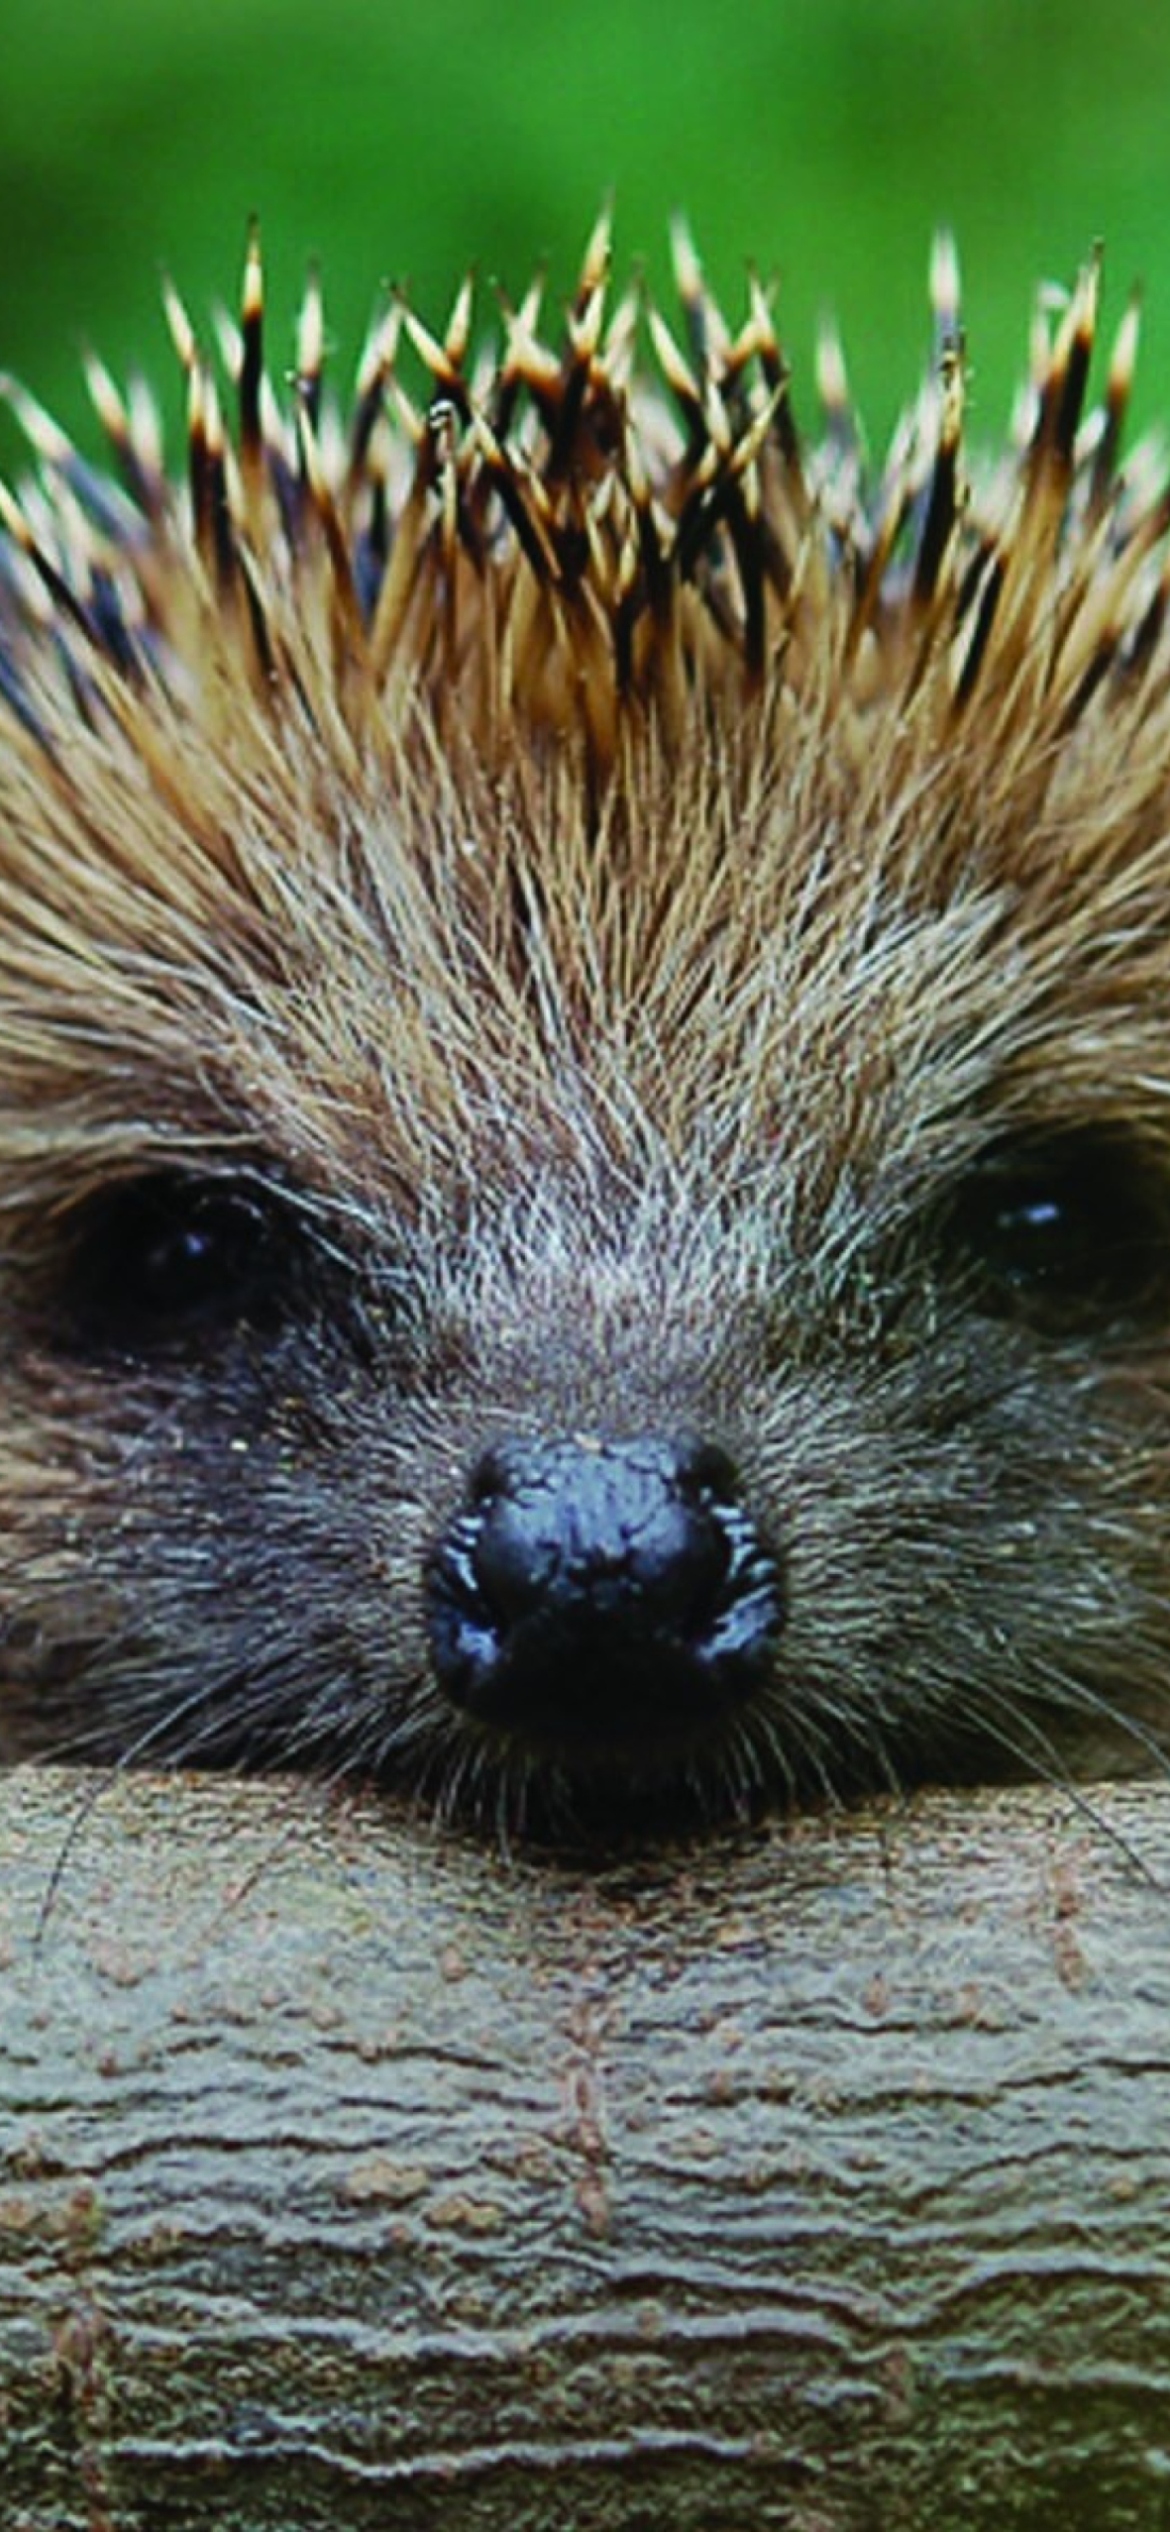 Sfondi Hedgehog Close Up 1170x2532